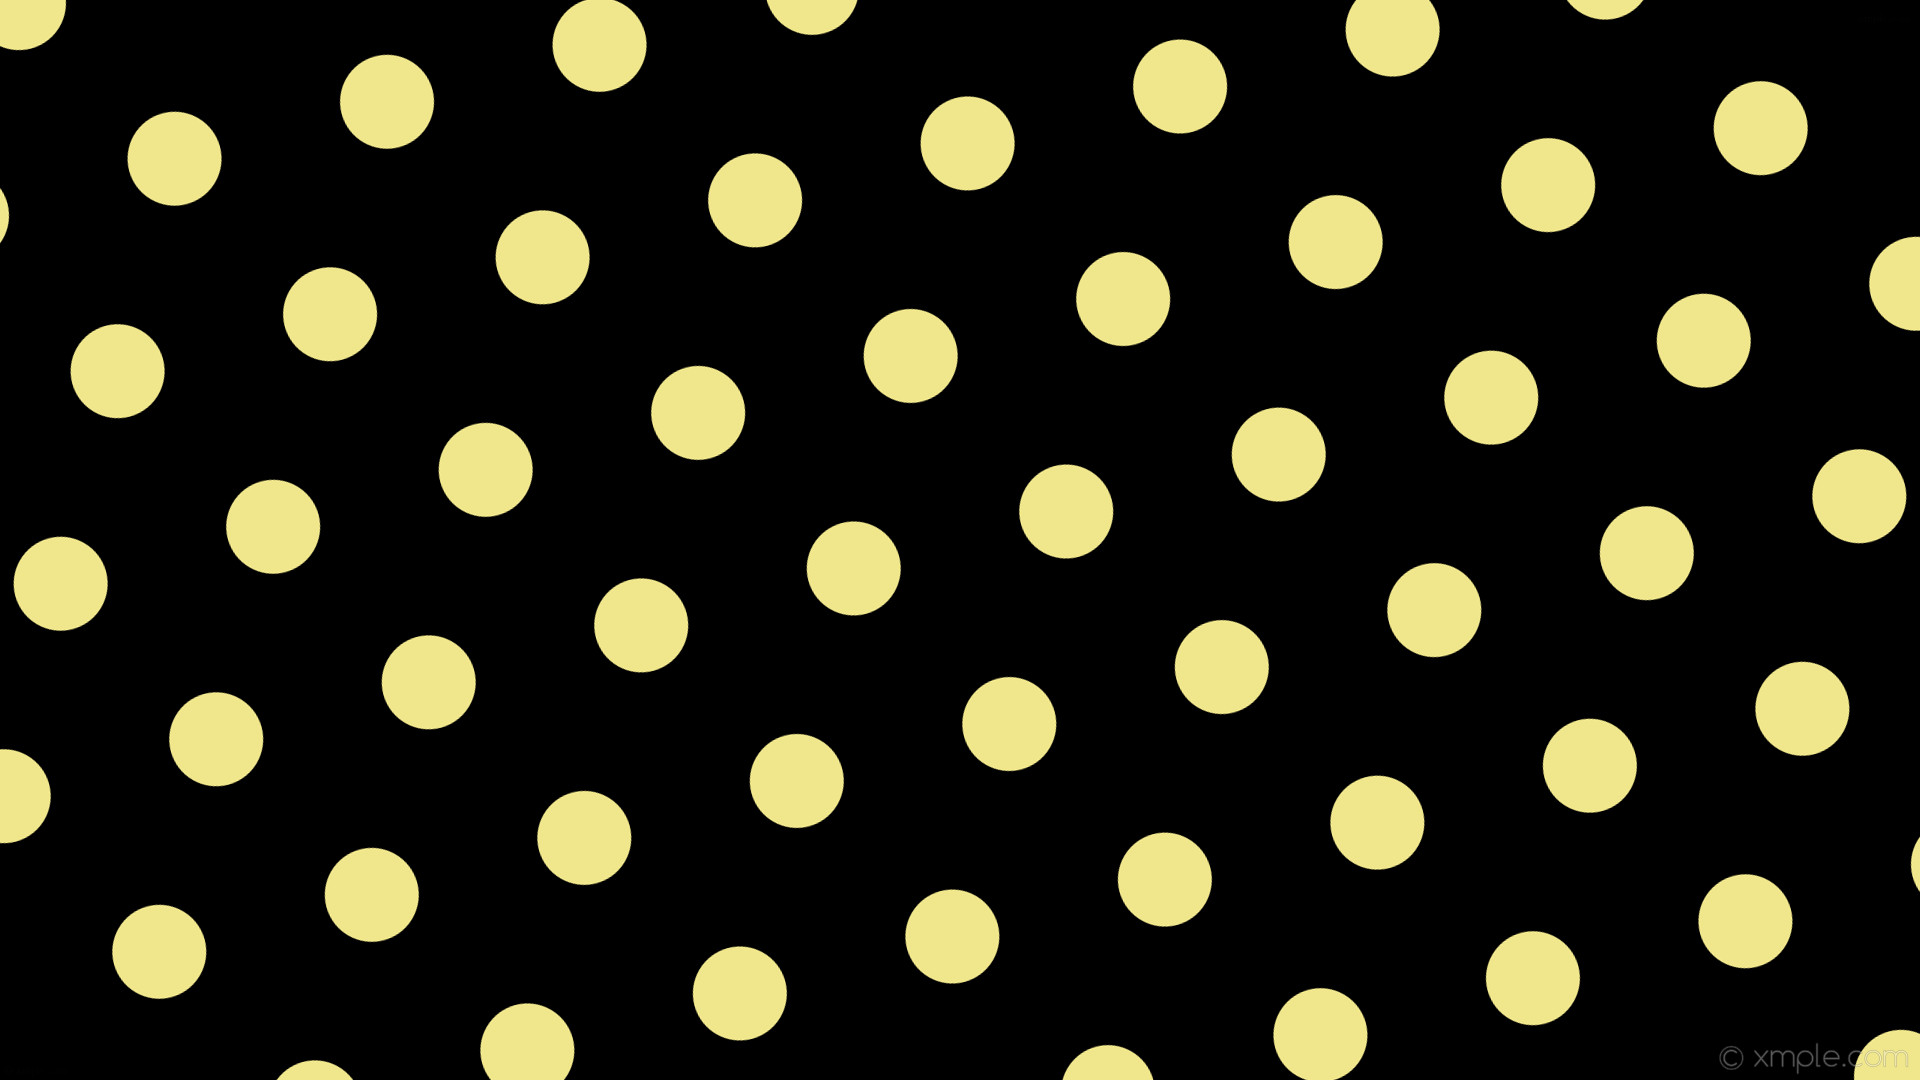 1920x1080 wallpaper hexagon black yellow polka dots khaki #000000 #f0e68c diagonal  15Â° 94px 220px